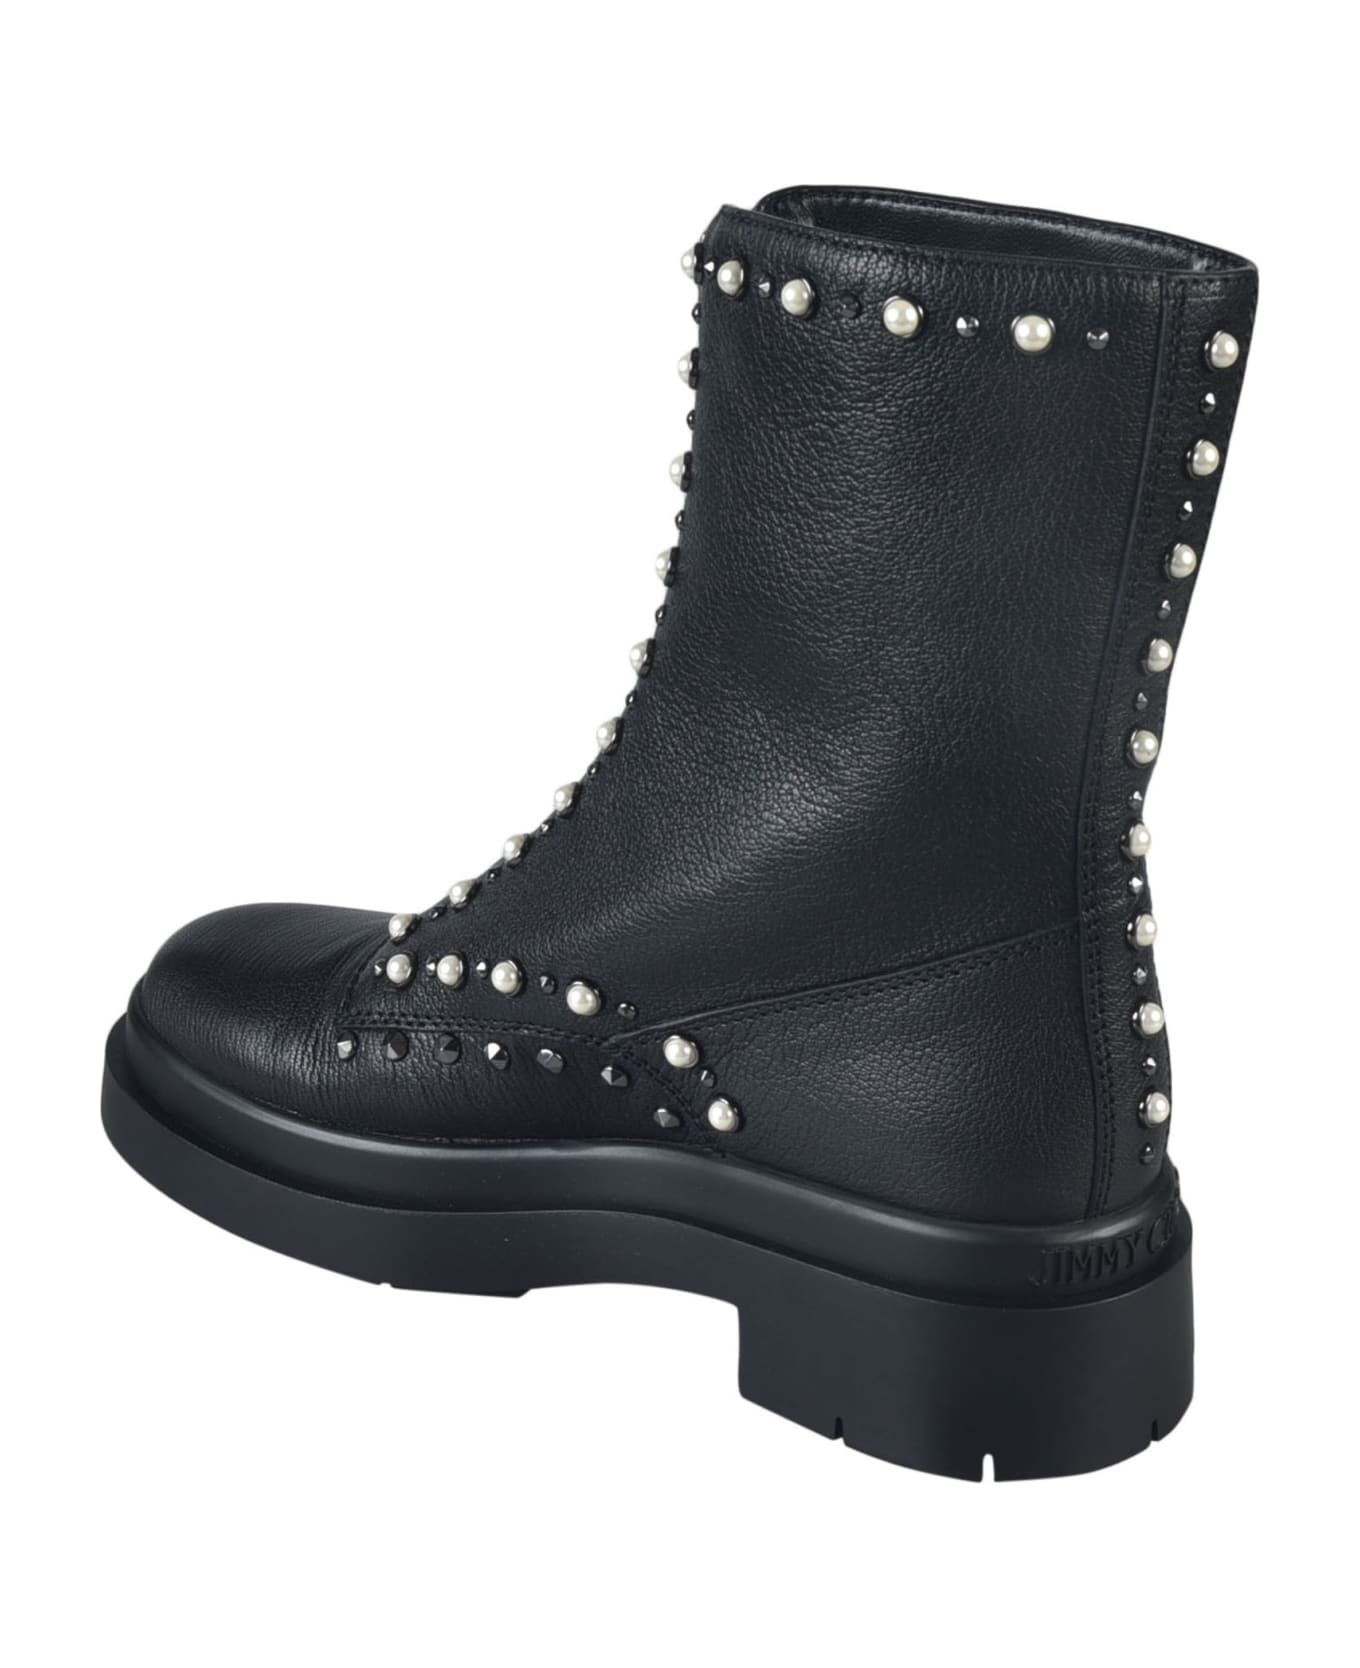 Jimmy Choo Nola Flat Boots - Black/Pearl/Gunmetal